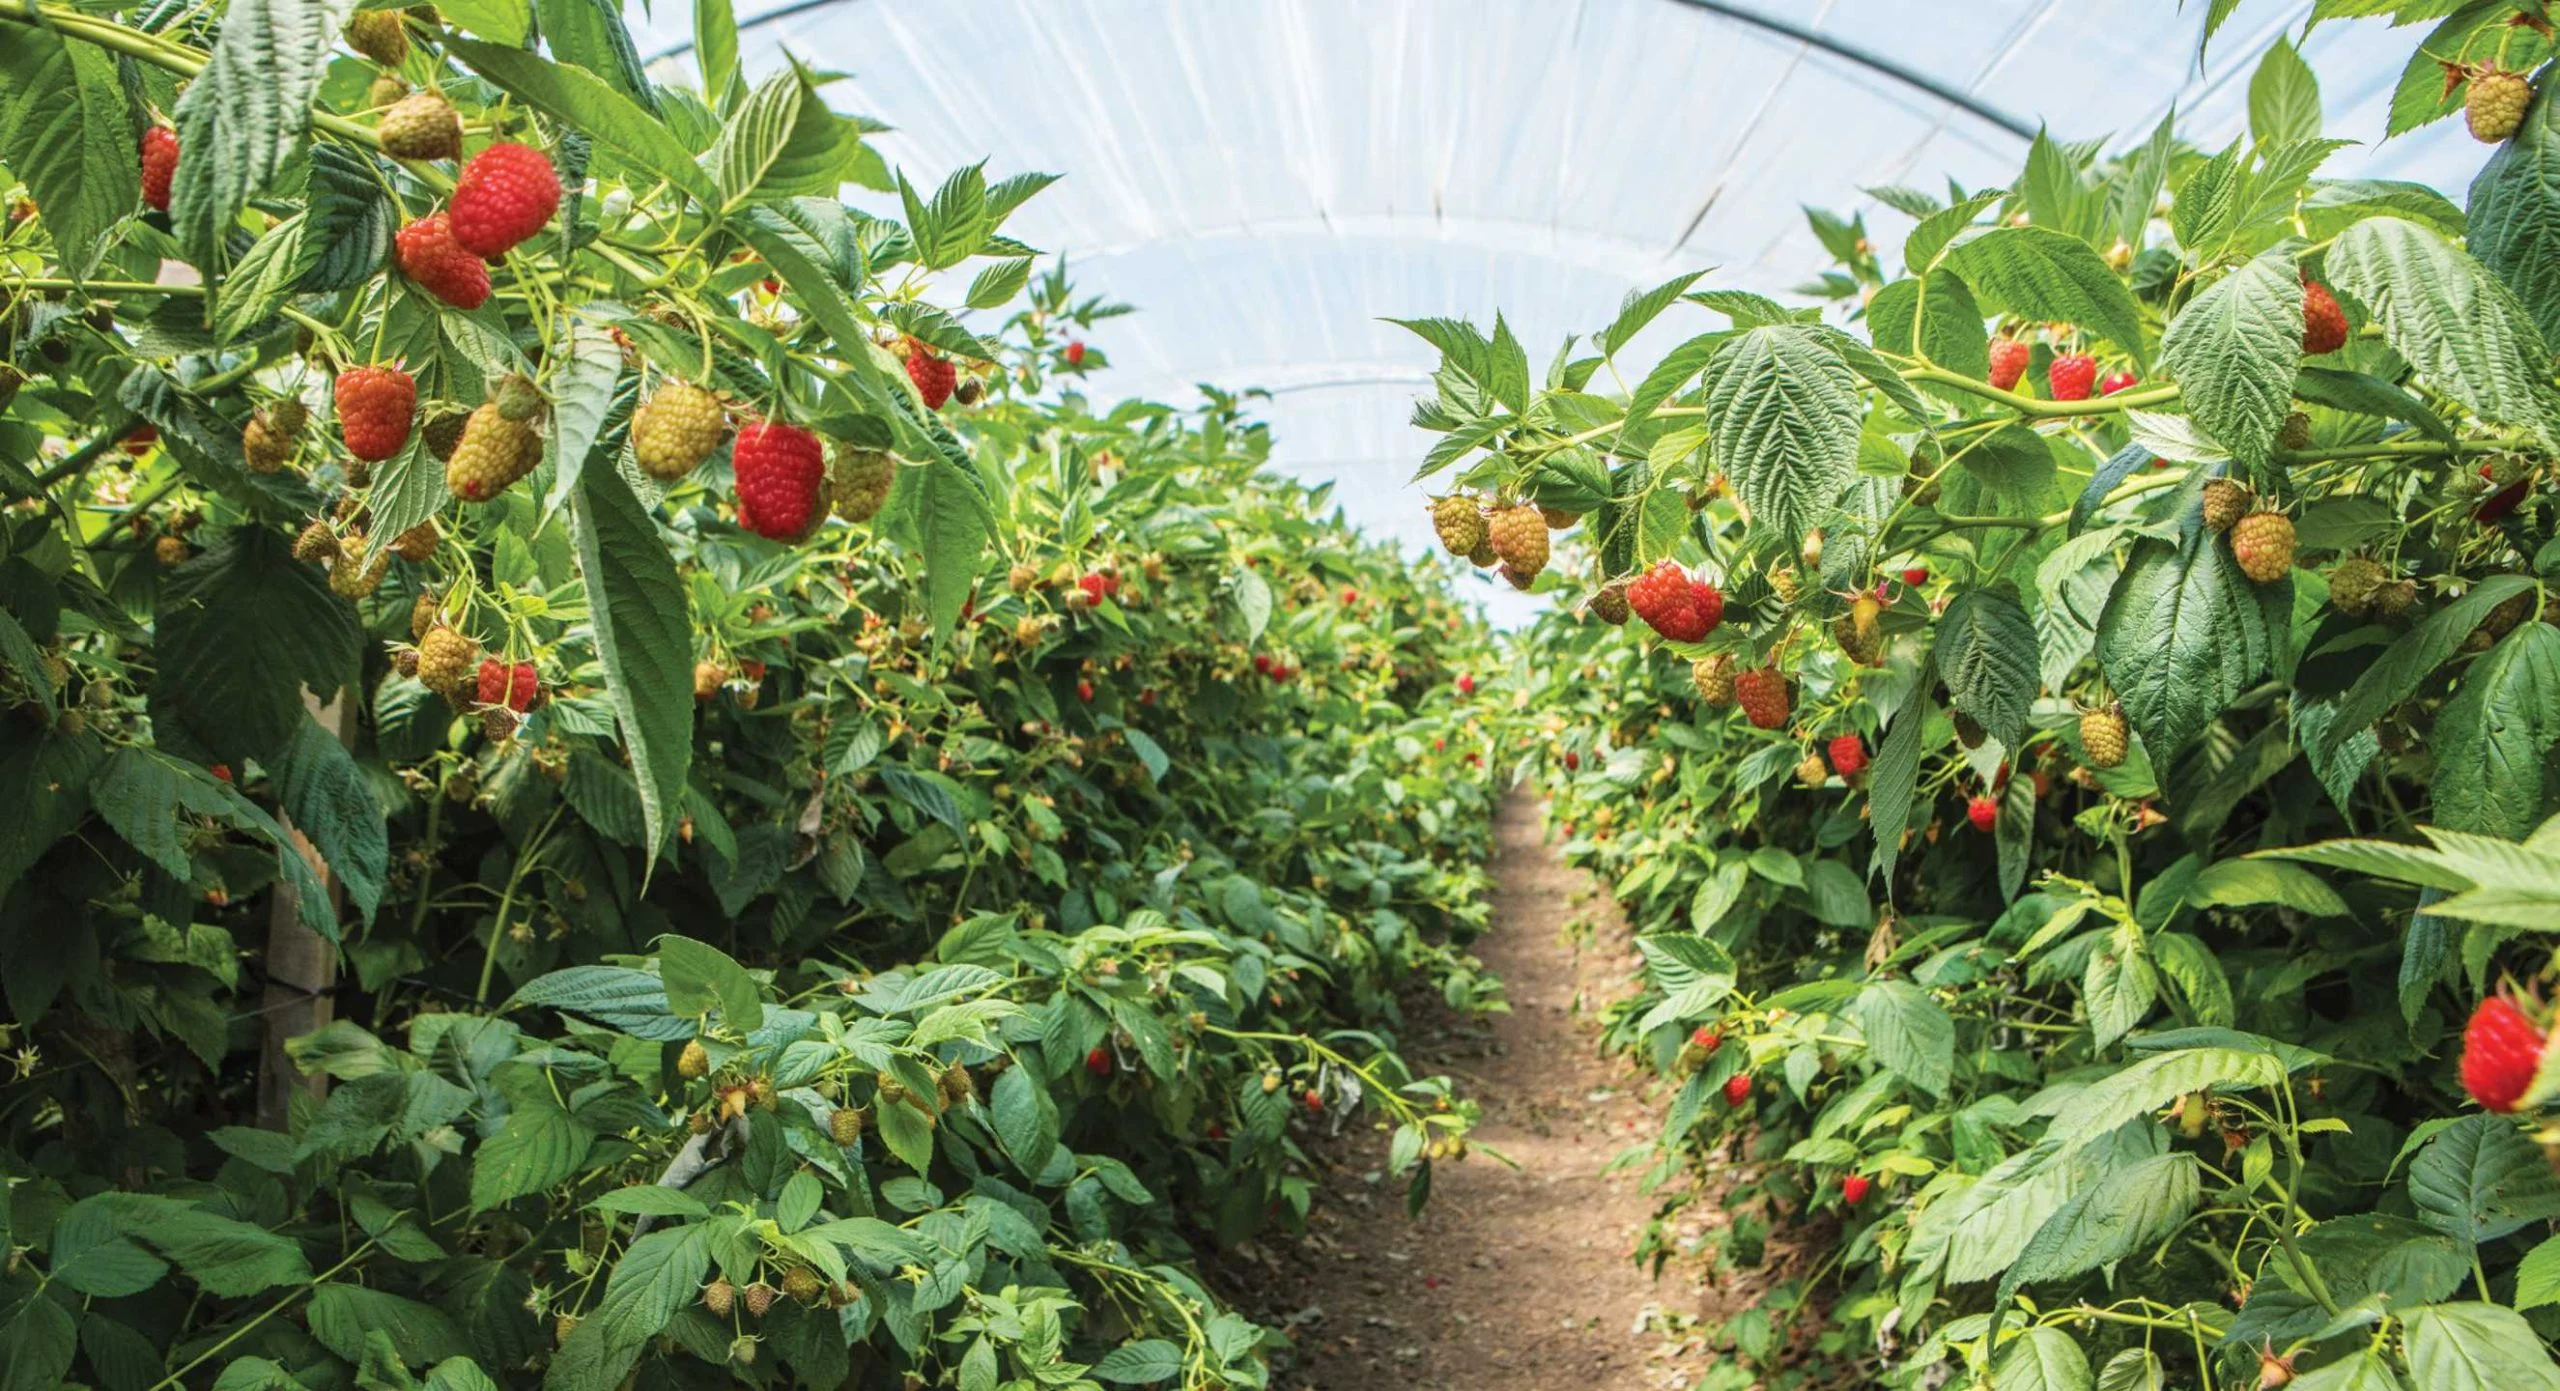 Conoce los beneficios de consumir berries de Driscoll’s, la productora con más de cien años de experiencia